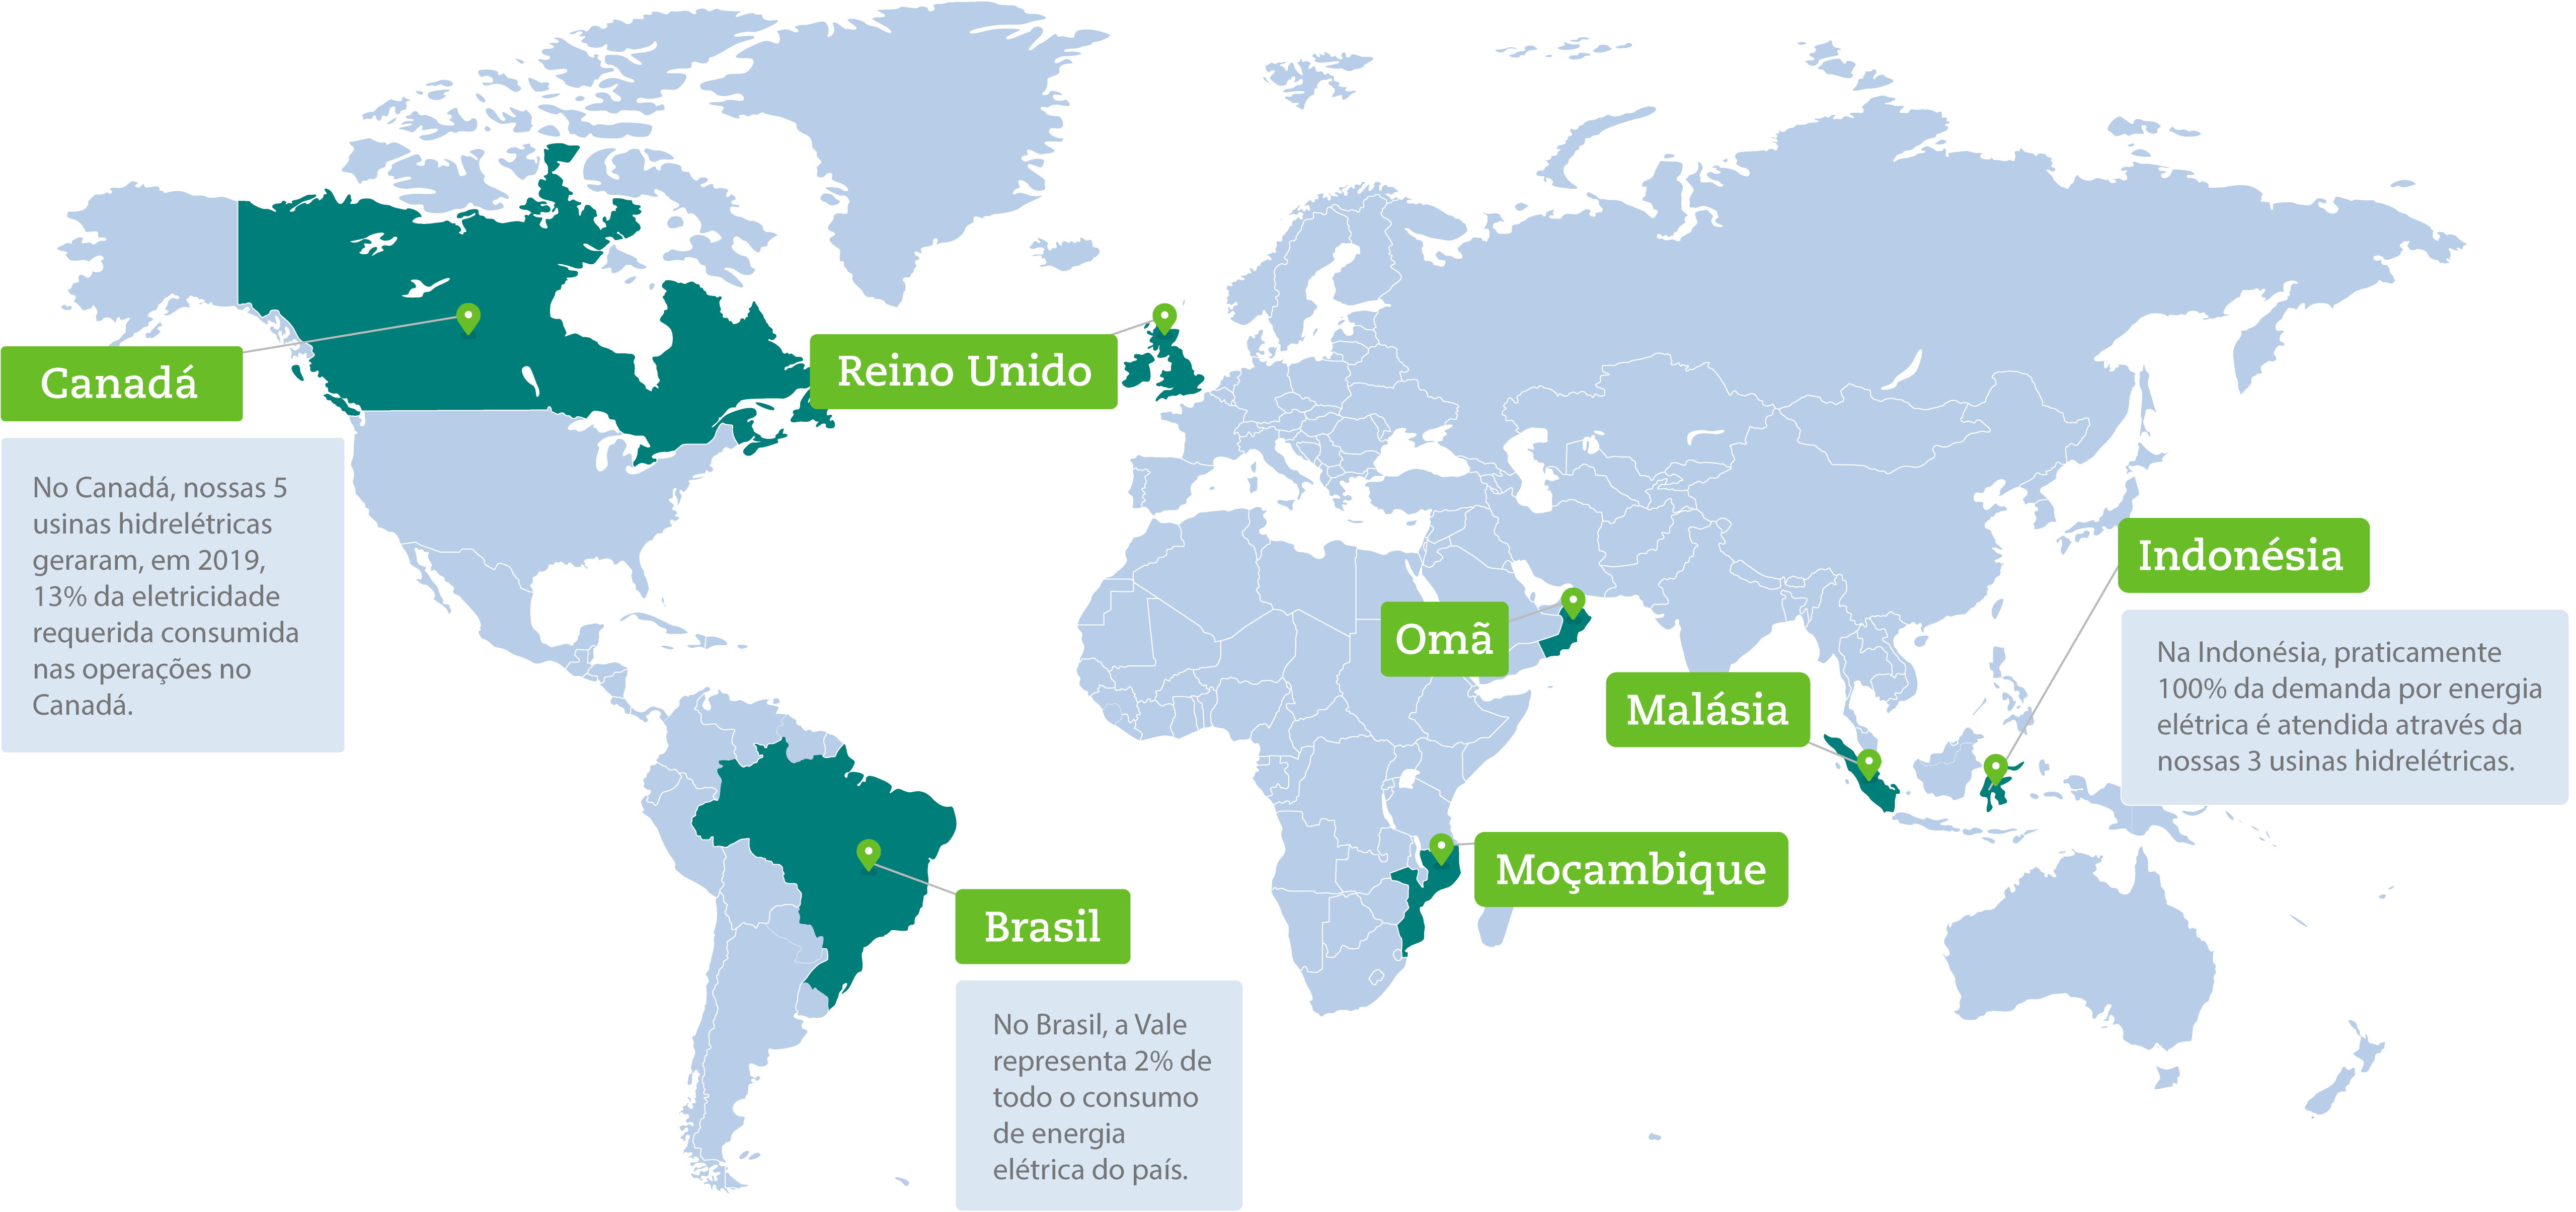 Mapa com informações sobre a geração de energia da Vale em diversos países